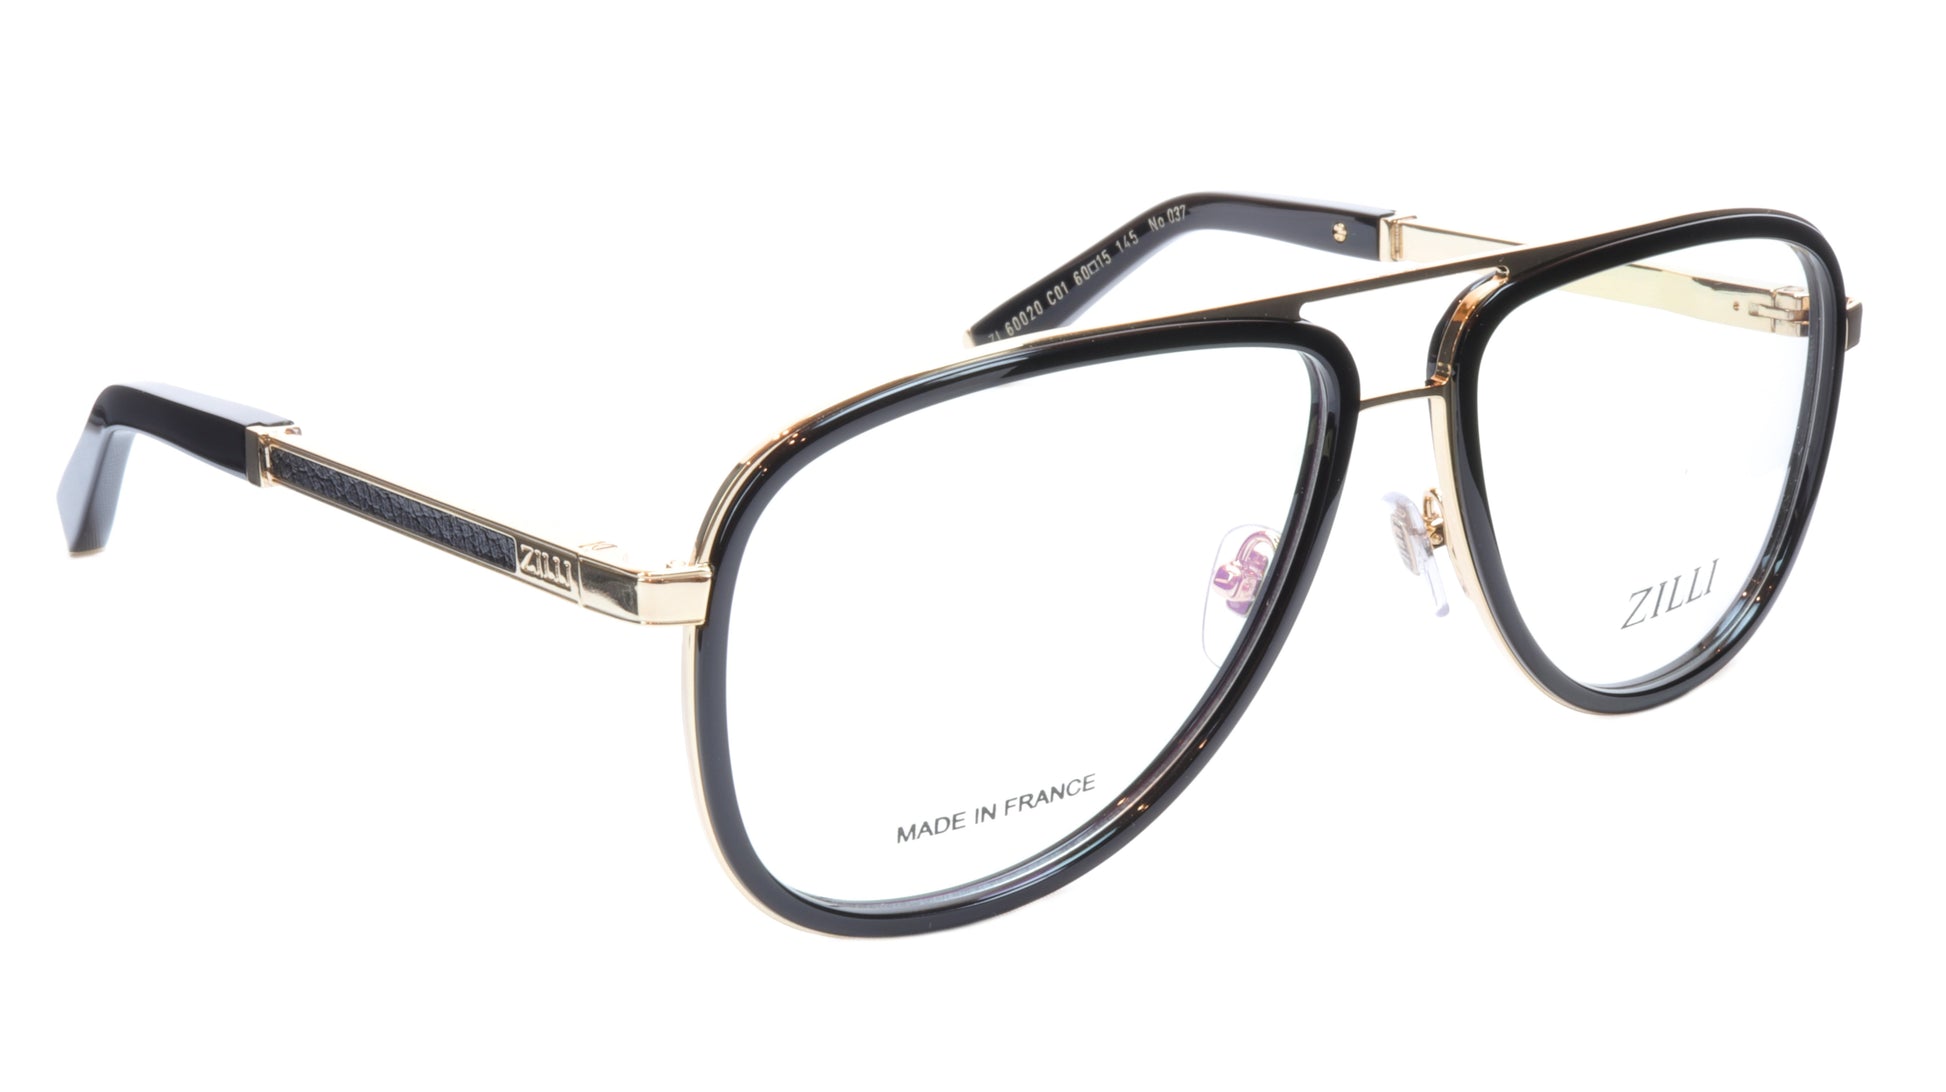 ZILLI Eyeglasses Frame Titanium Acetate Gold Black France Made ZI60020 C01 - Frame Bay